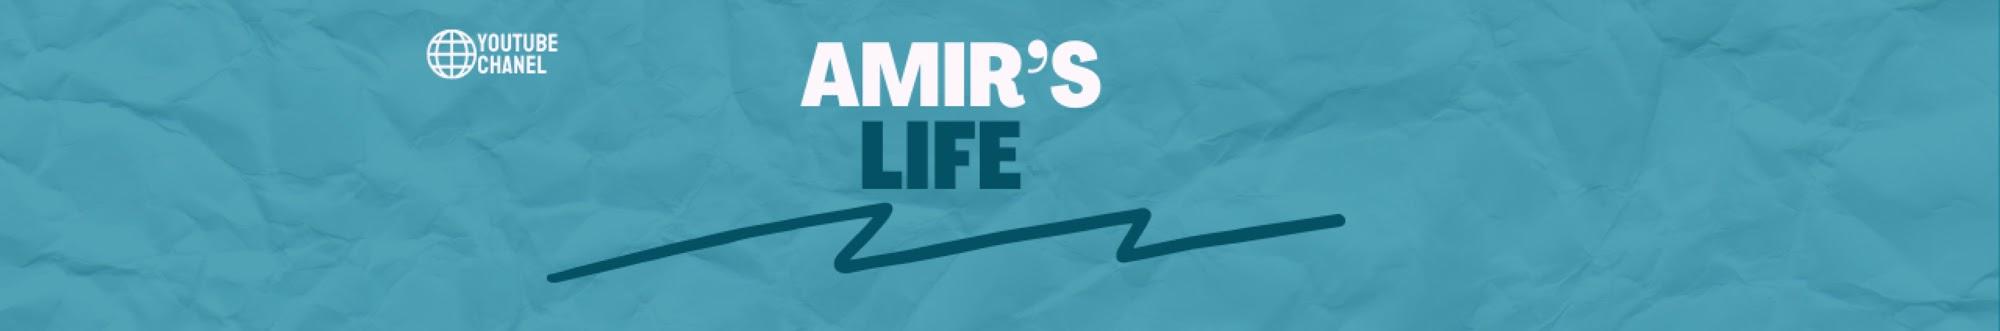 Amir's Life